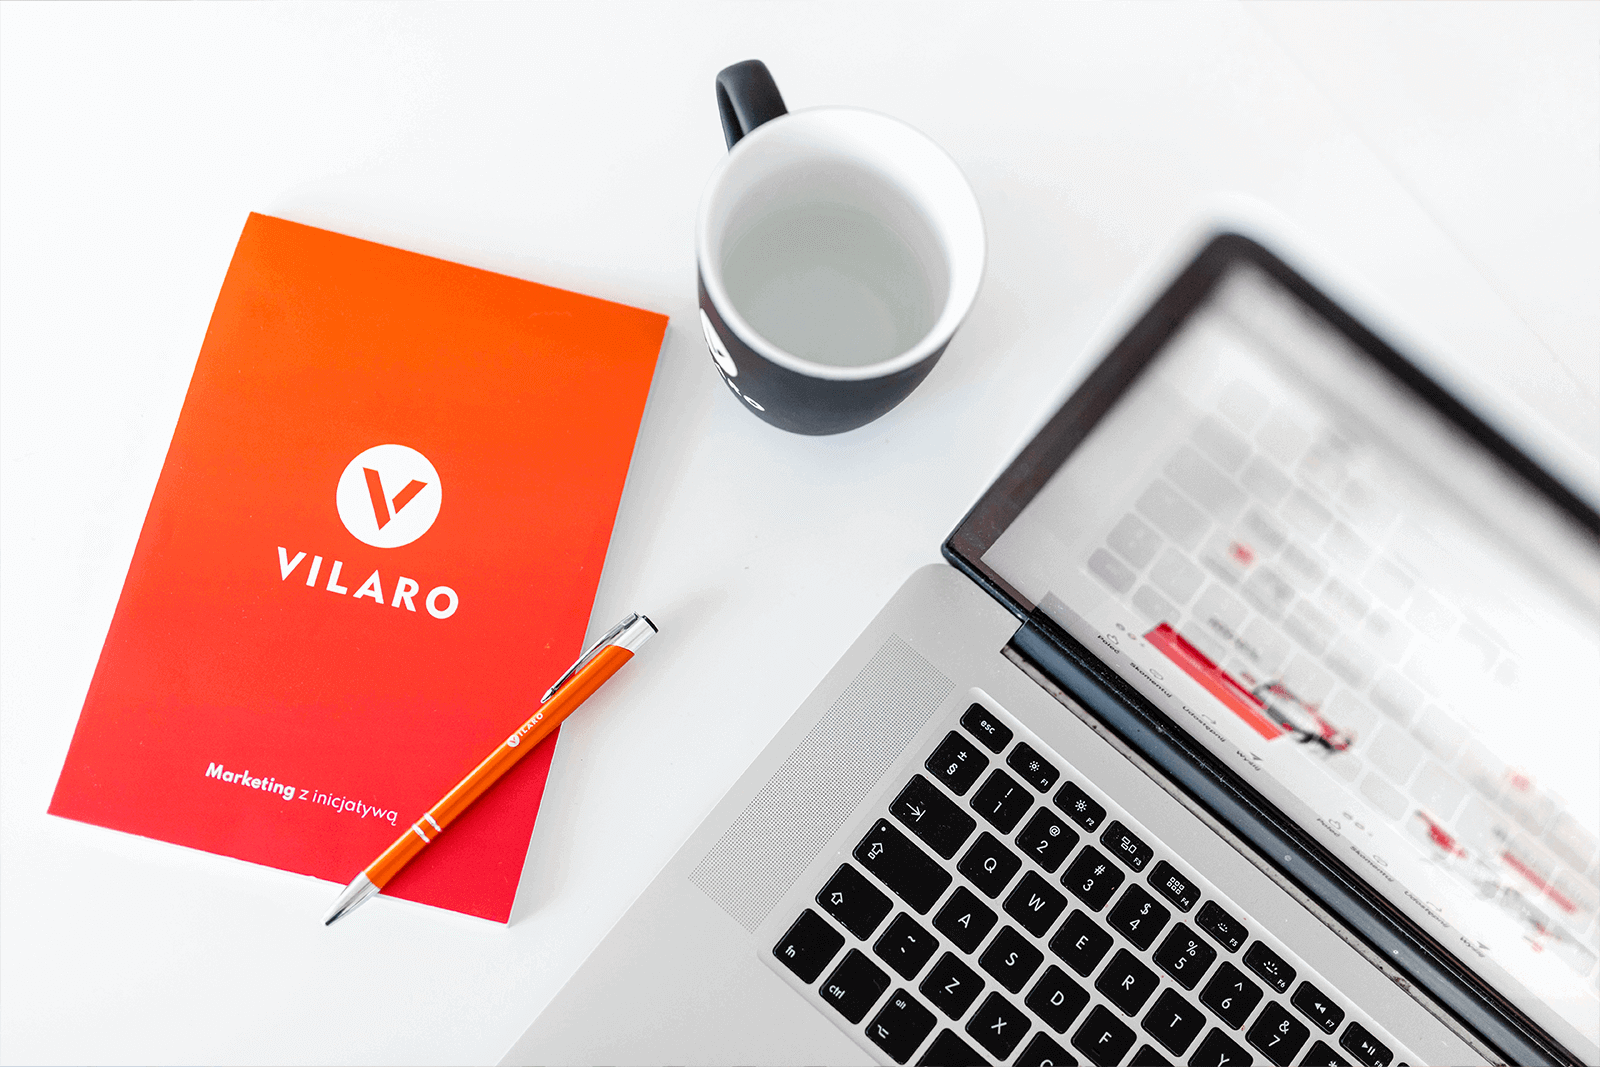 Laptop, kubek i notatnik z brandingiem firmy Vilaro - Marketing z inicjatywą.